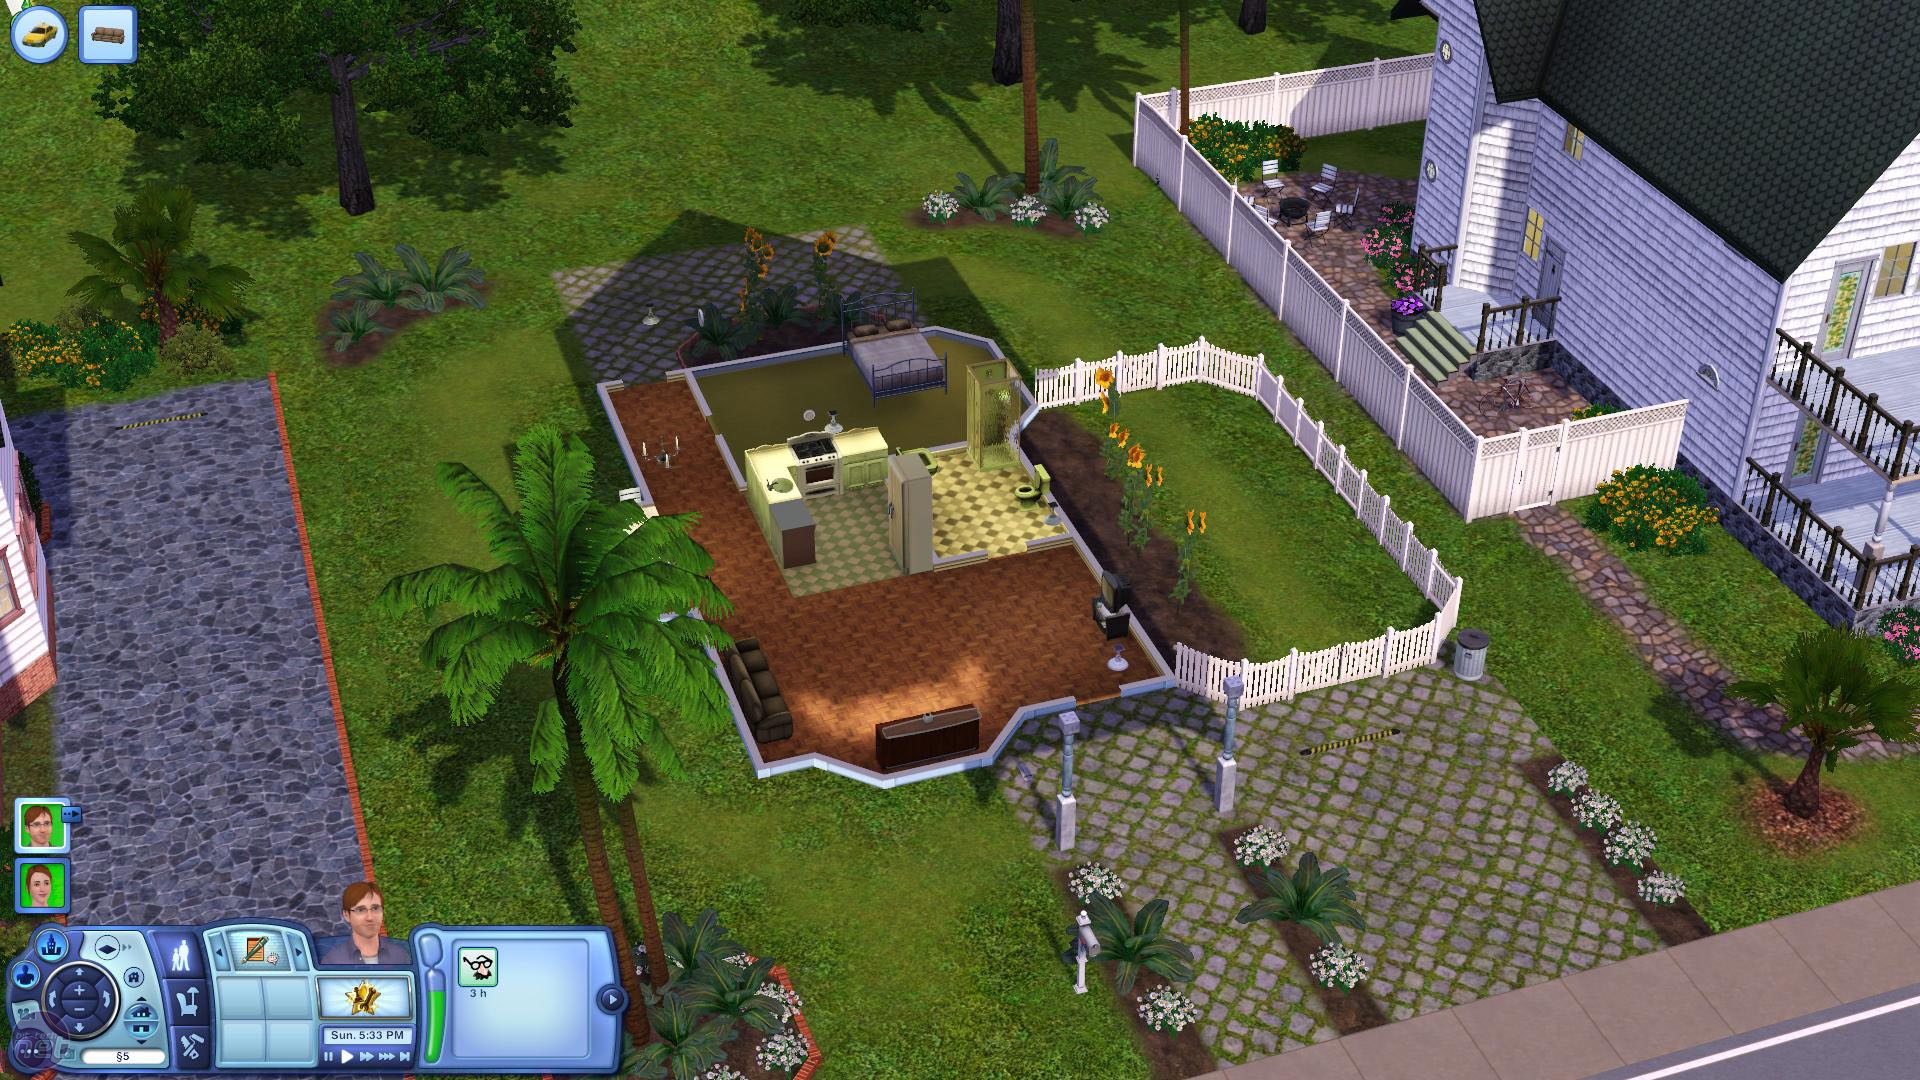 The Sims 3 Hands on Preview The Sims 3 Hands on Preview